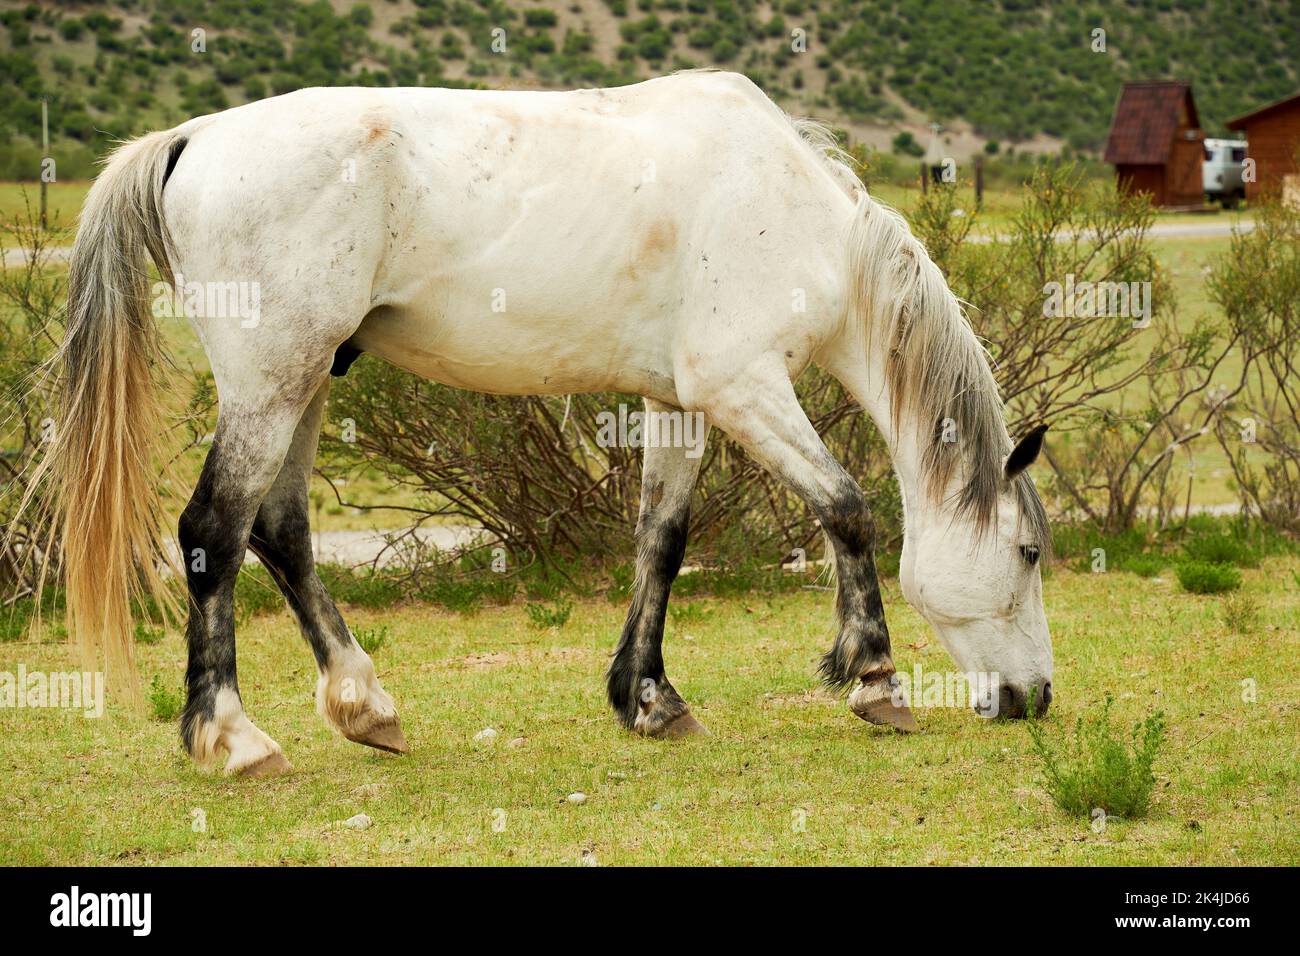 Cheval blanc mangeant de l'herbe sur la vallée dans le village rural. Animaux domestiques Banque D'Images